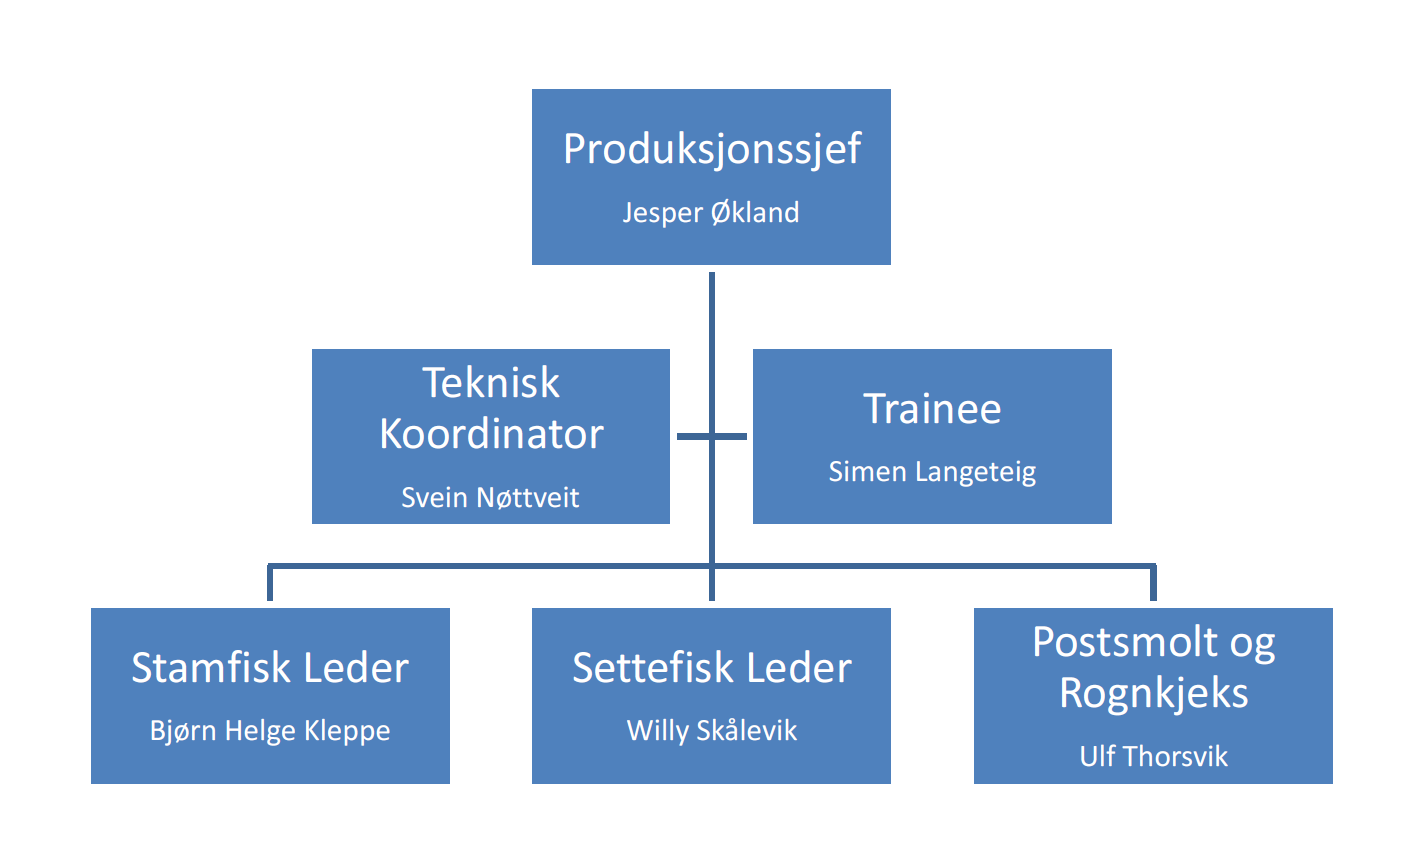 3. Organisering Avdelingsleder har ansvaret for daglig drift og de ansatte ved avdelingen. Avdelingsleder ved Sagen, Ulf Thorsvik, rapporterer til Produksjonssjef Settefisk.